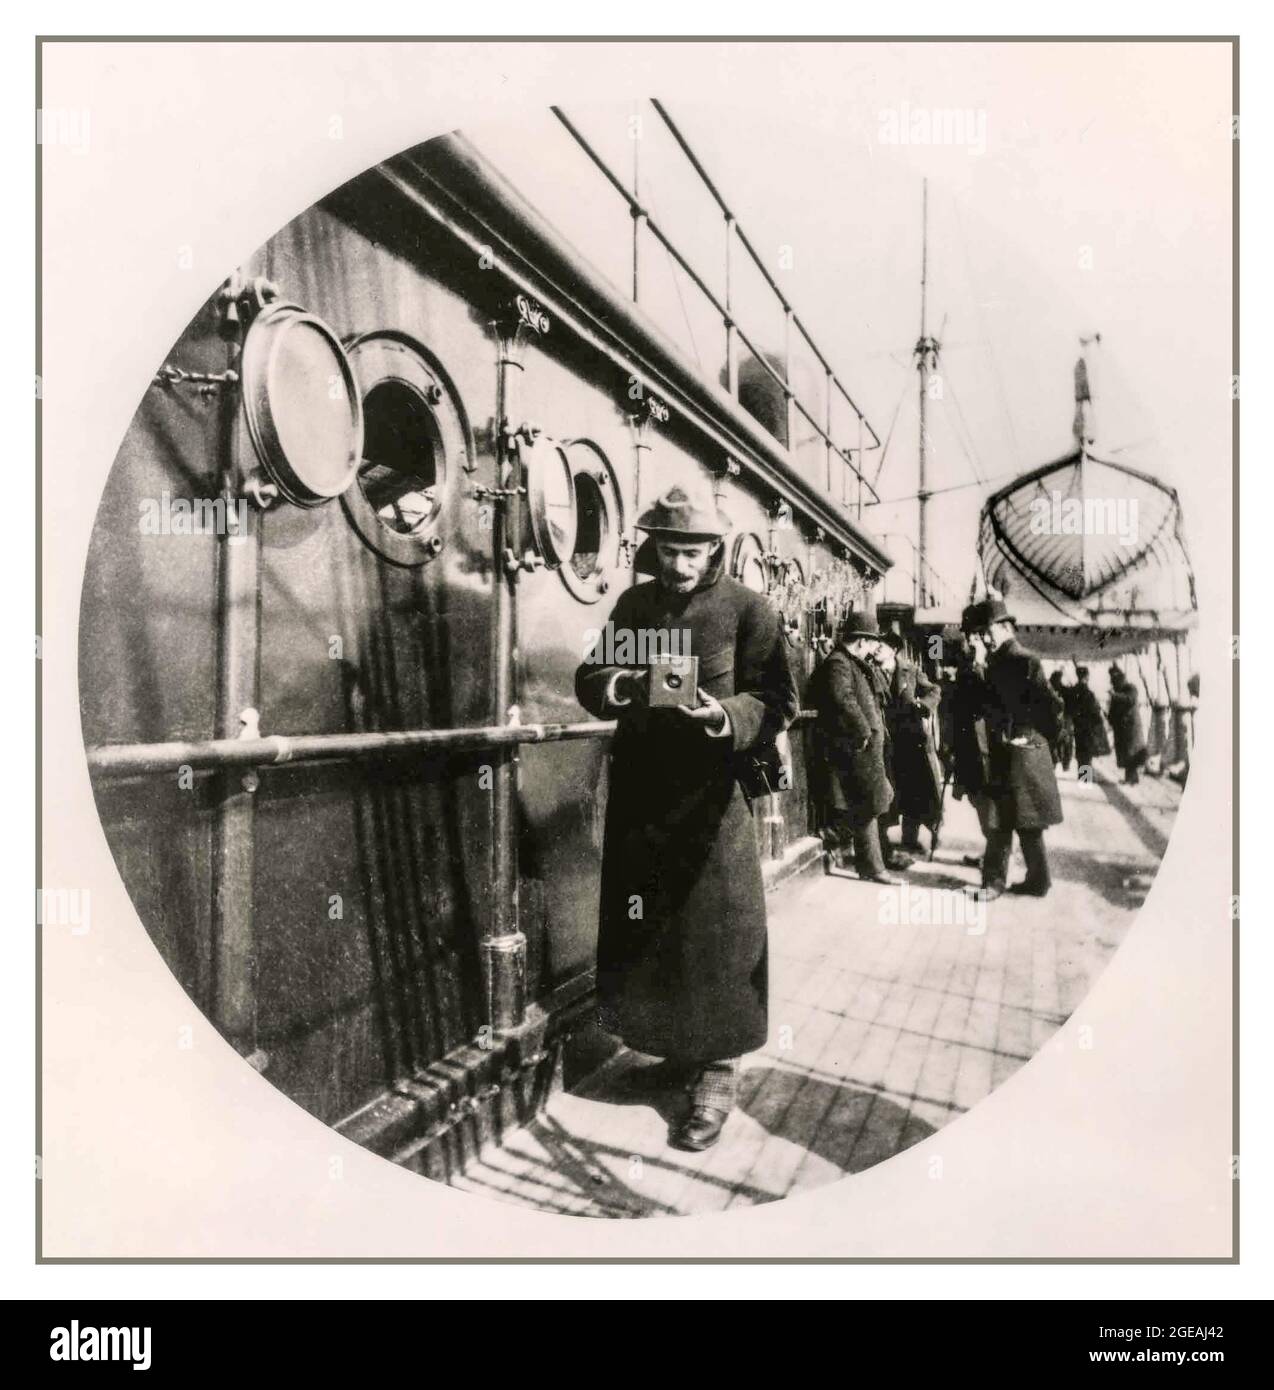 GEORGE EASTMAN (1854-1932), tenant un ancien appareil photo-caisson Kodak sur un BATEAU SS GALLIA dans les années 1890, pris par Fred Church, inventeur américain, industriel et visionnaire pour l'appareil-photo-caisson de film en rouleau portable et fondateur de l'Eastman Kodak Company à Rochester, État de New York, États-Unis Banque D'Images